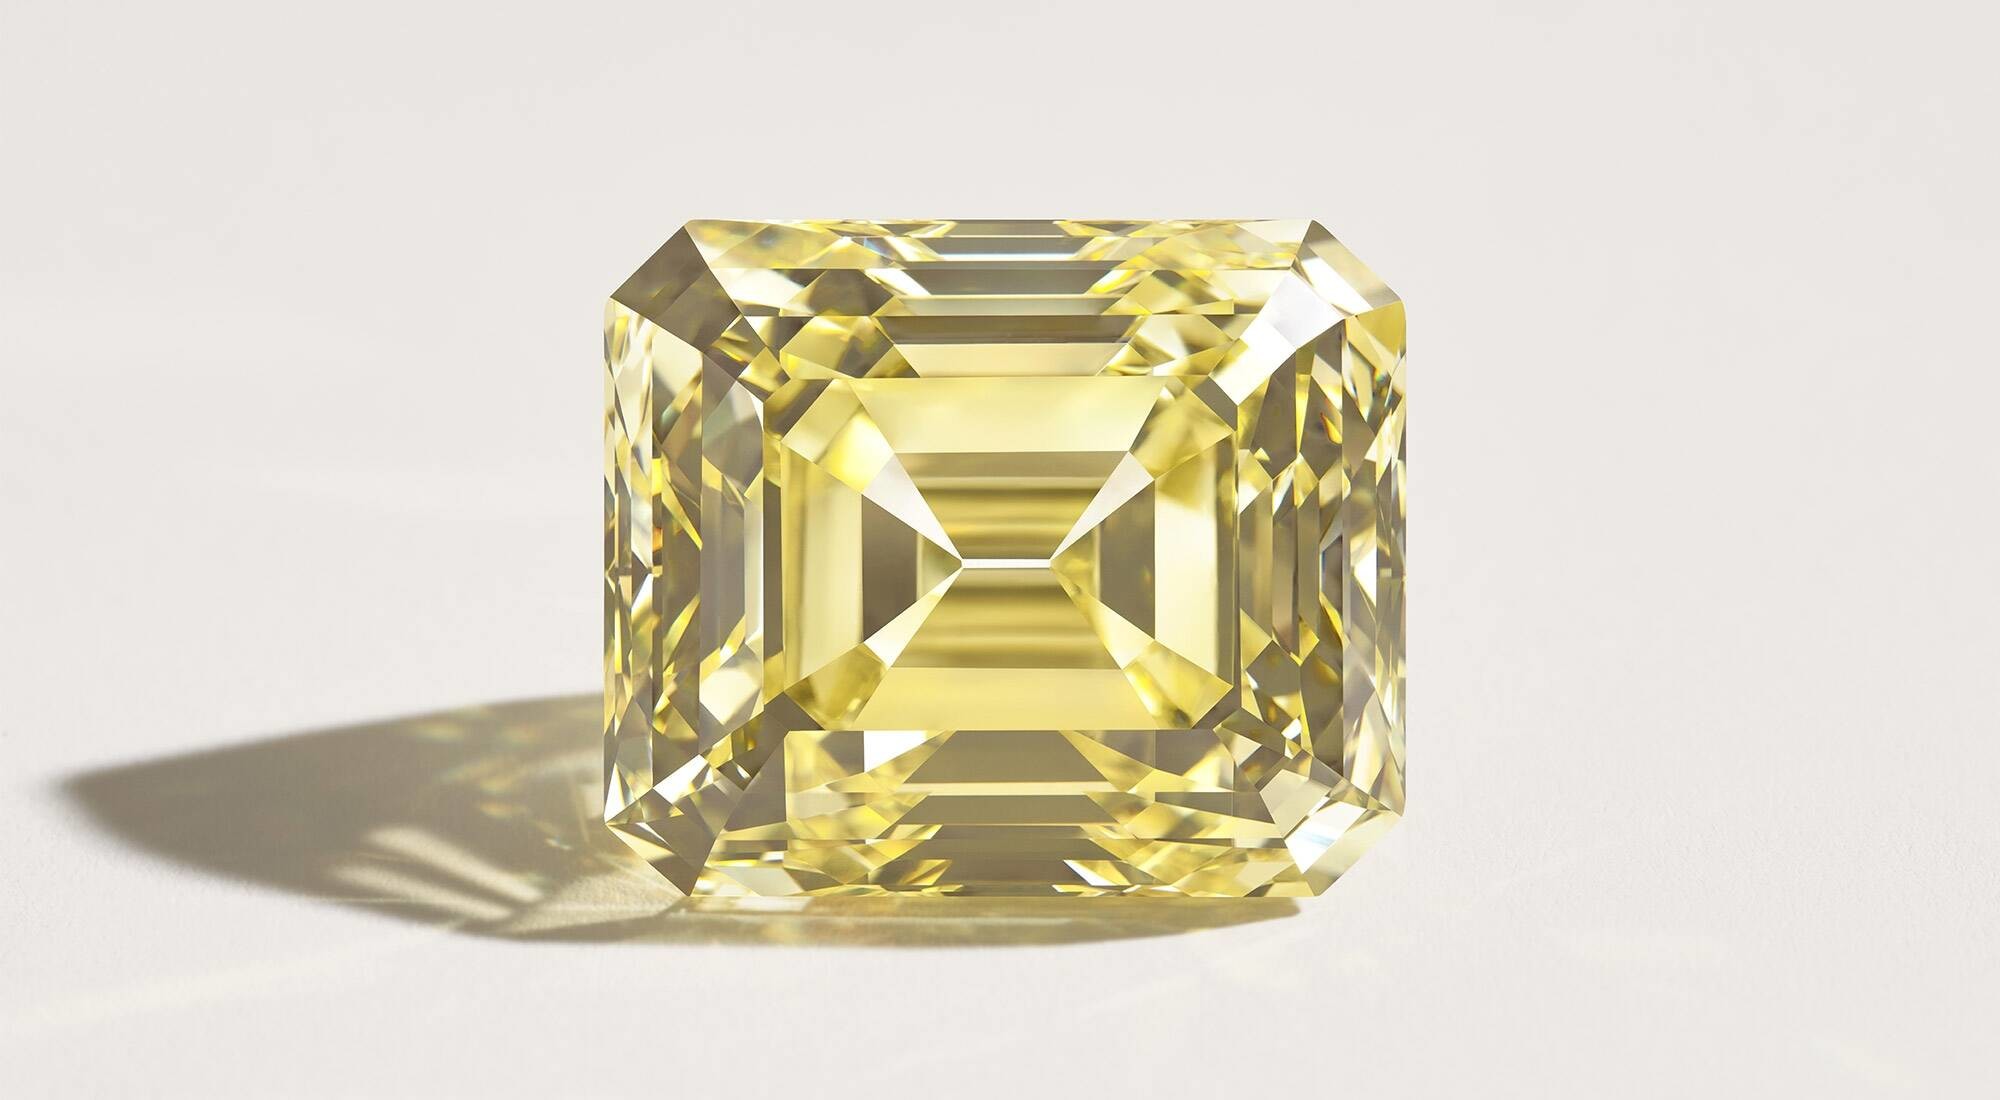 news-main-fred-retrouve-lun-des-plus-incroyables-diamants-jaunes-du-monde-son-emblematique-soleil-dor-apres-plus-de-44-ans-de-separation.1641831594.jpg